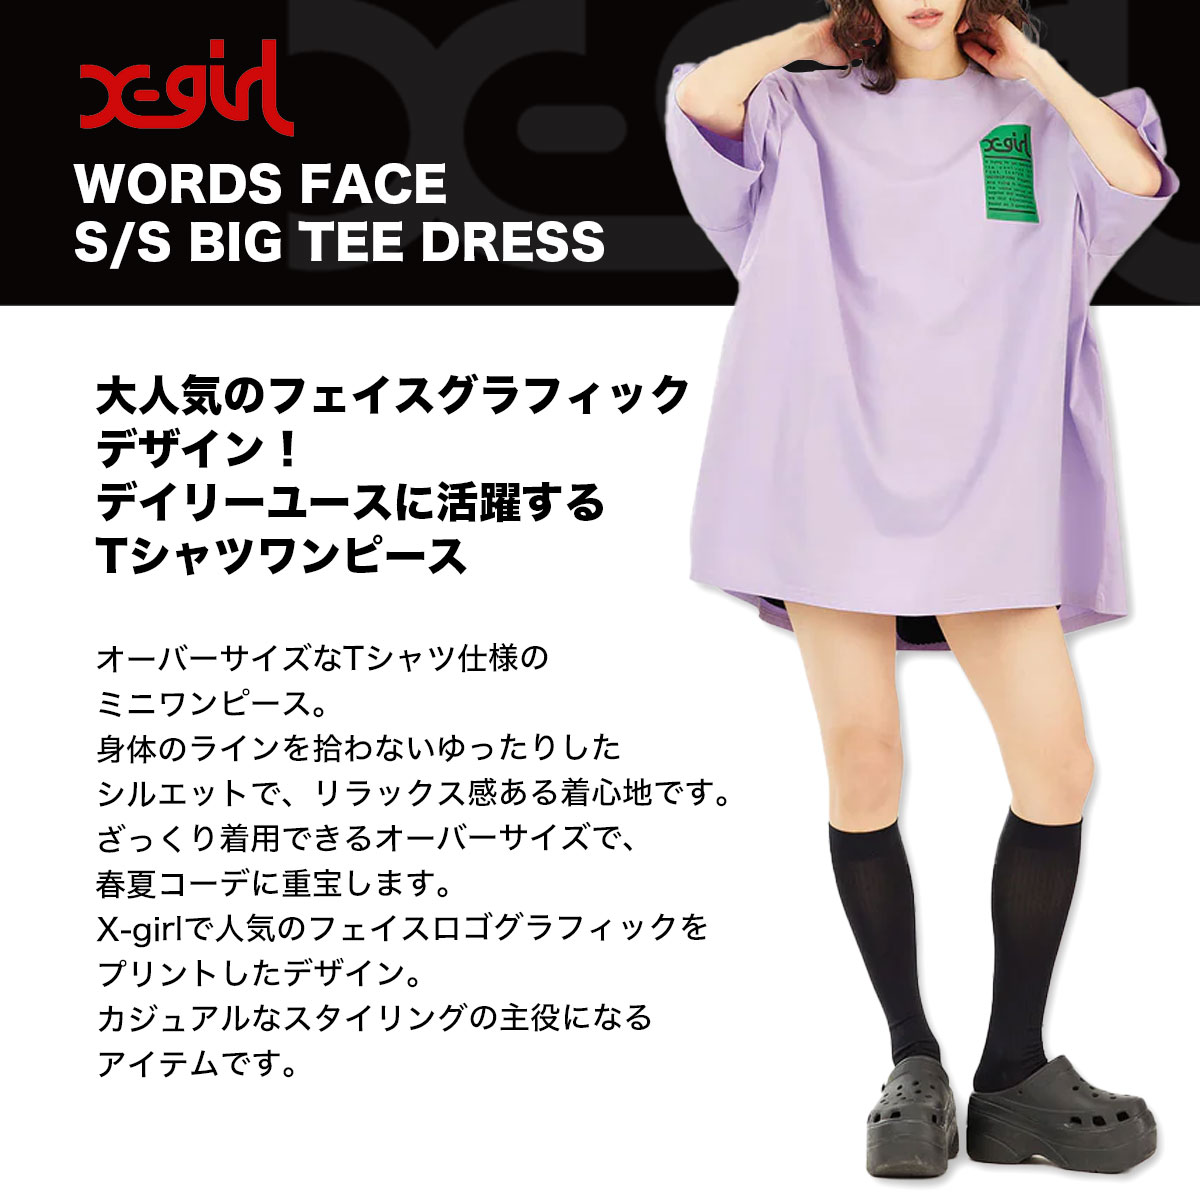 x-girl WORDS FACE S S BIG TEE DRESS